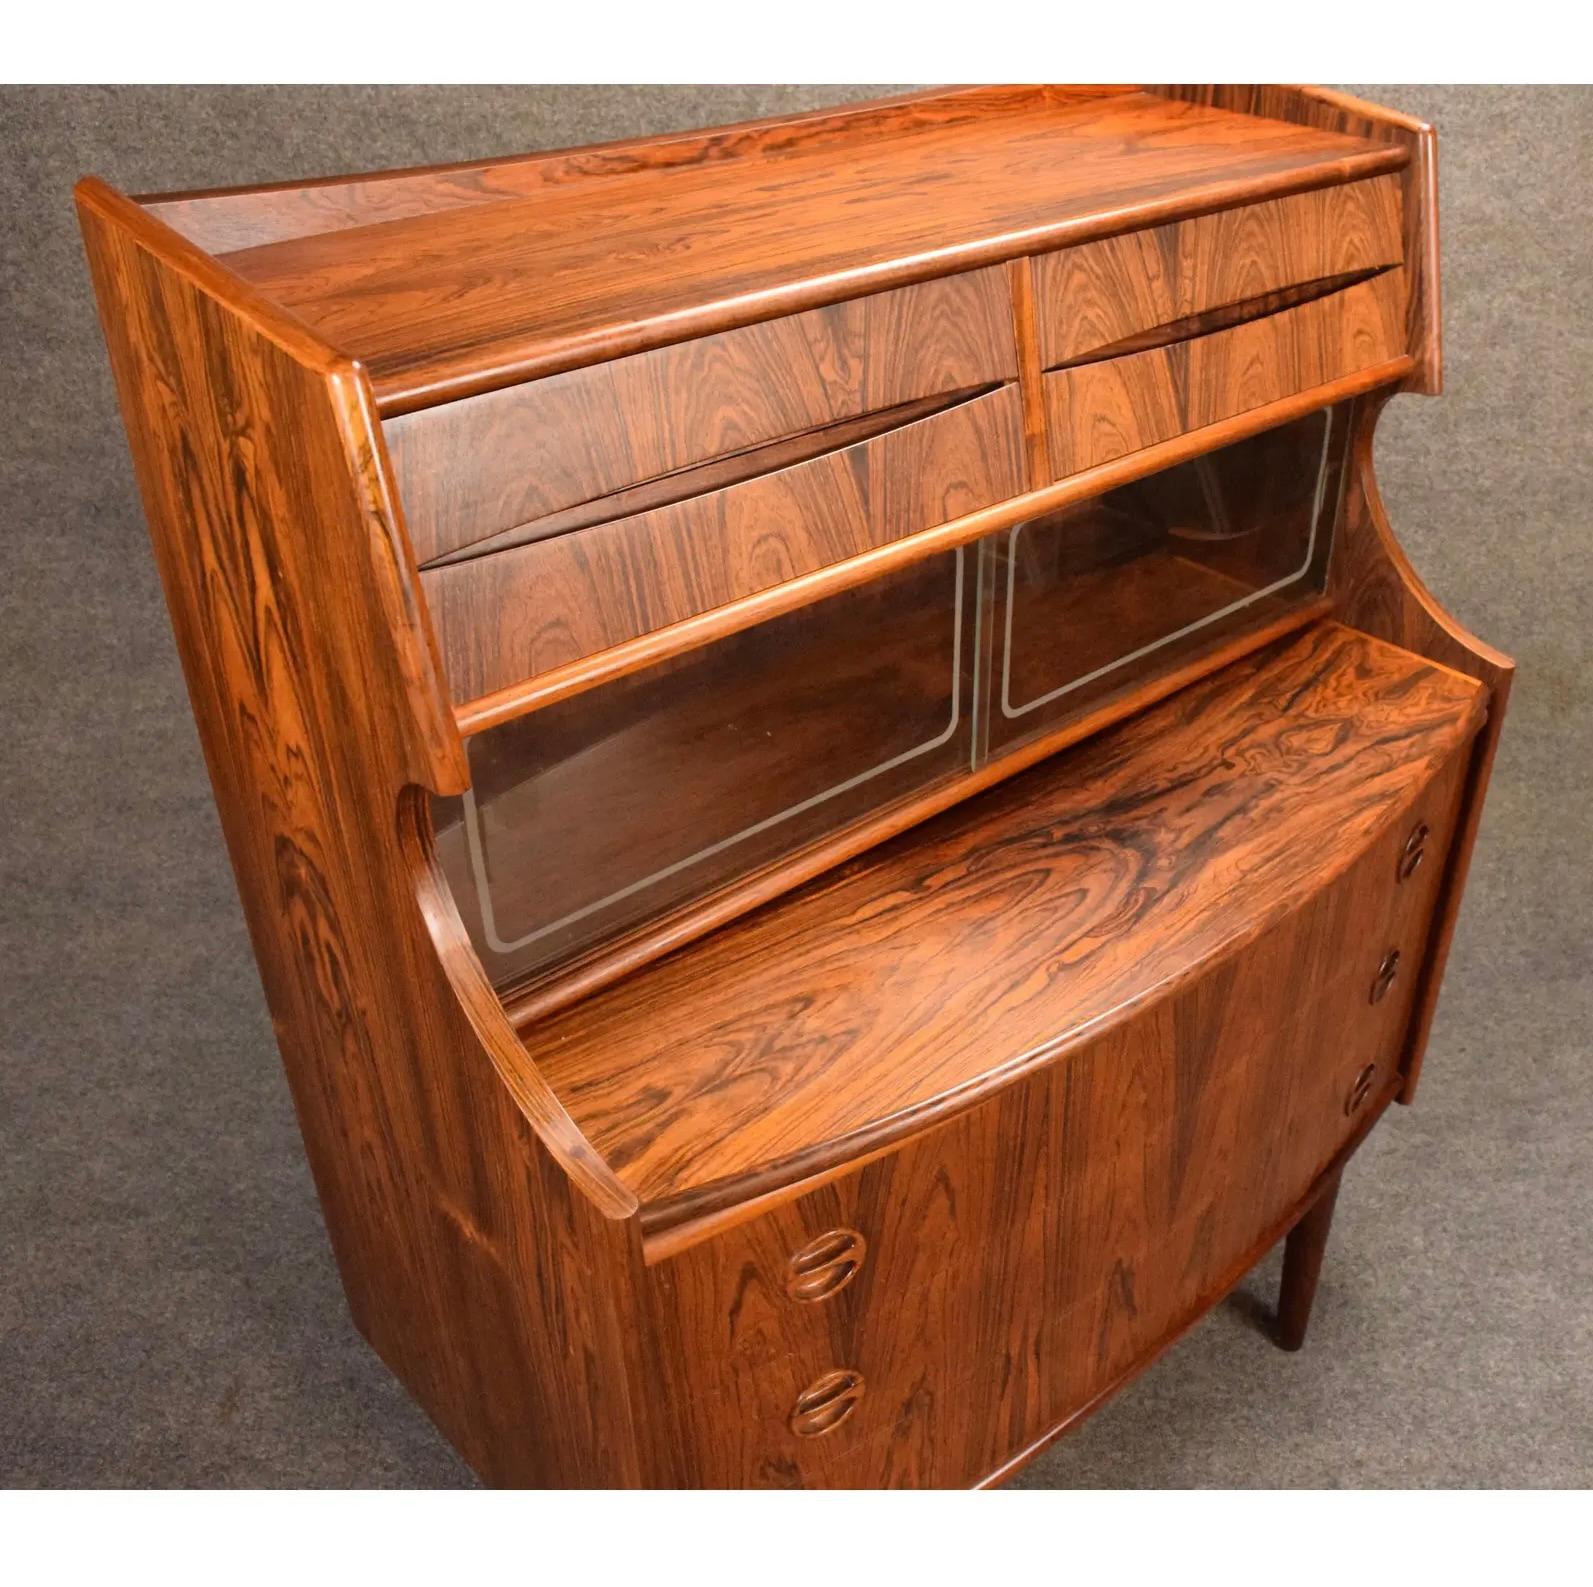 Woodwork Vintage Danish Mid Century Modern Rosewood Secretary Desk by Falsig Mobler For Sale